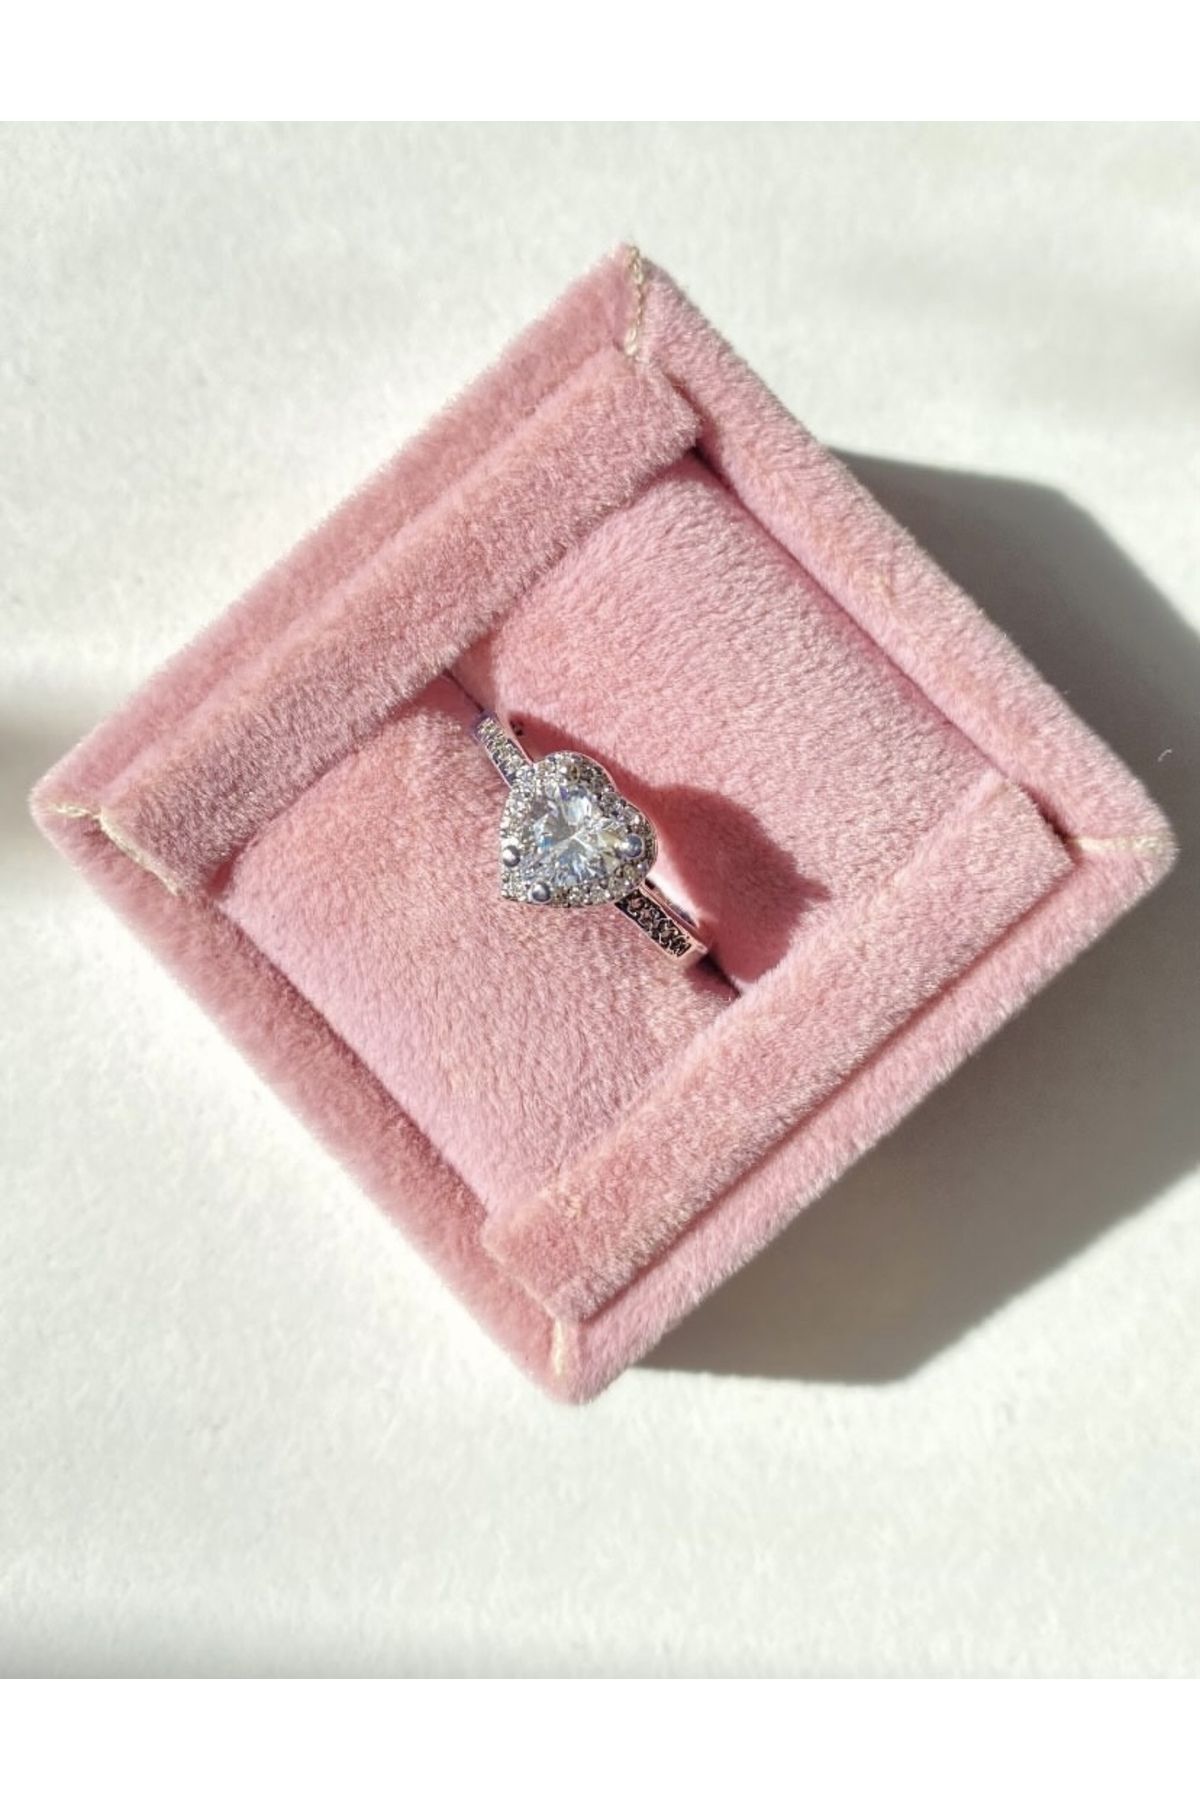 Plüton Design Kalpli ayarlanabilir ciddi ilişki yüzüğü hediye yüzük sevgiliye hediye